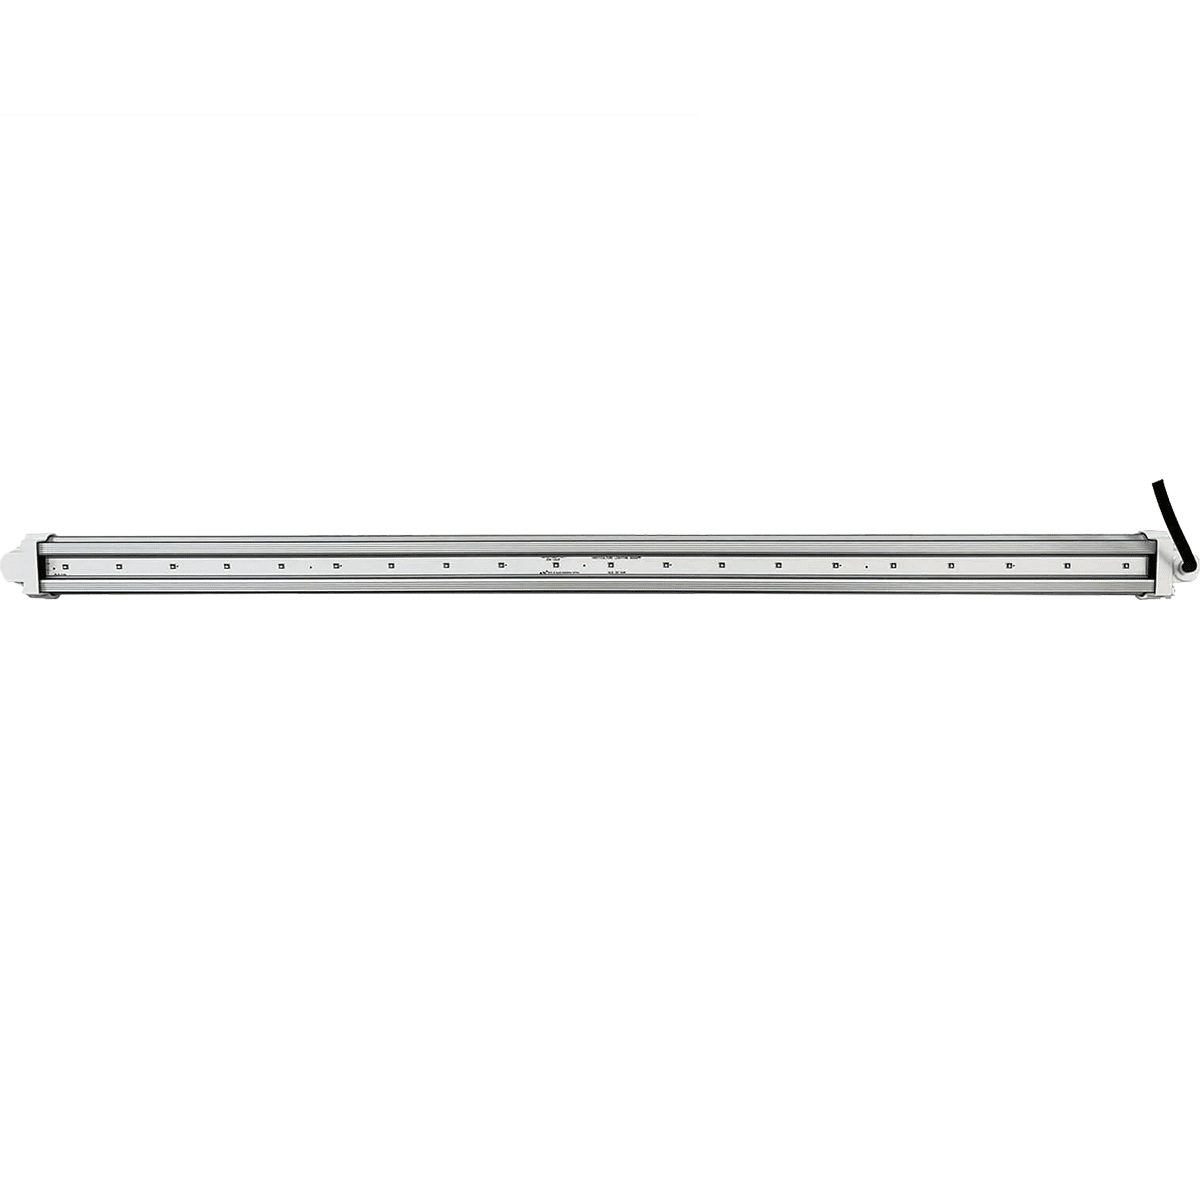 HLG 30 UVA XL Waterproof LED Supplement Bar (HLG-30-VA-XL) - 240V